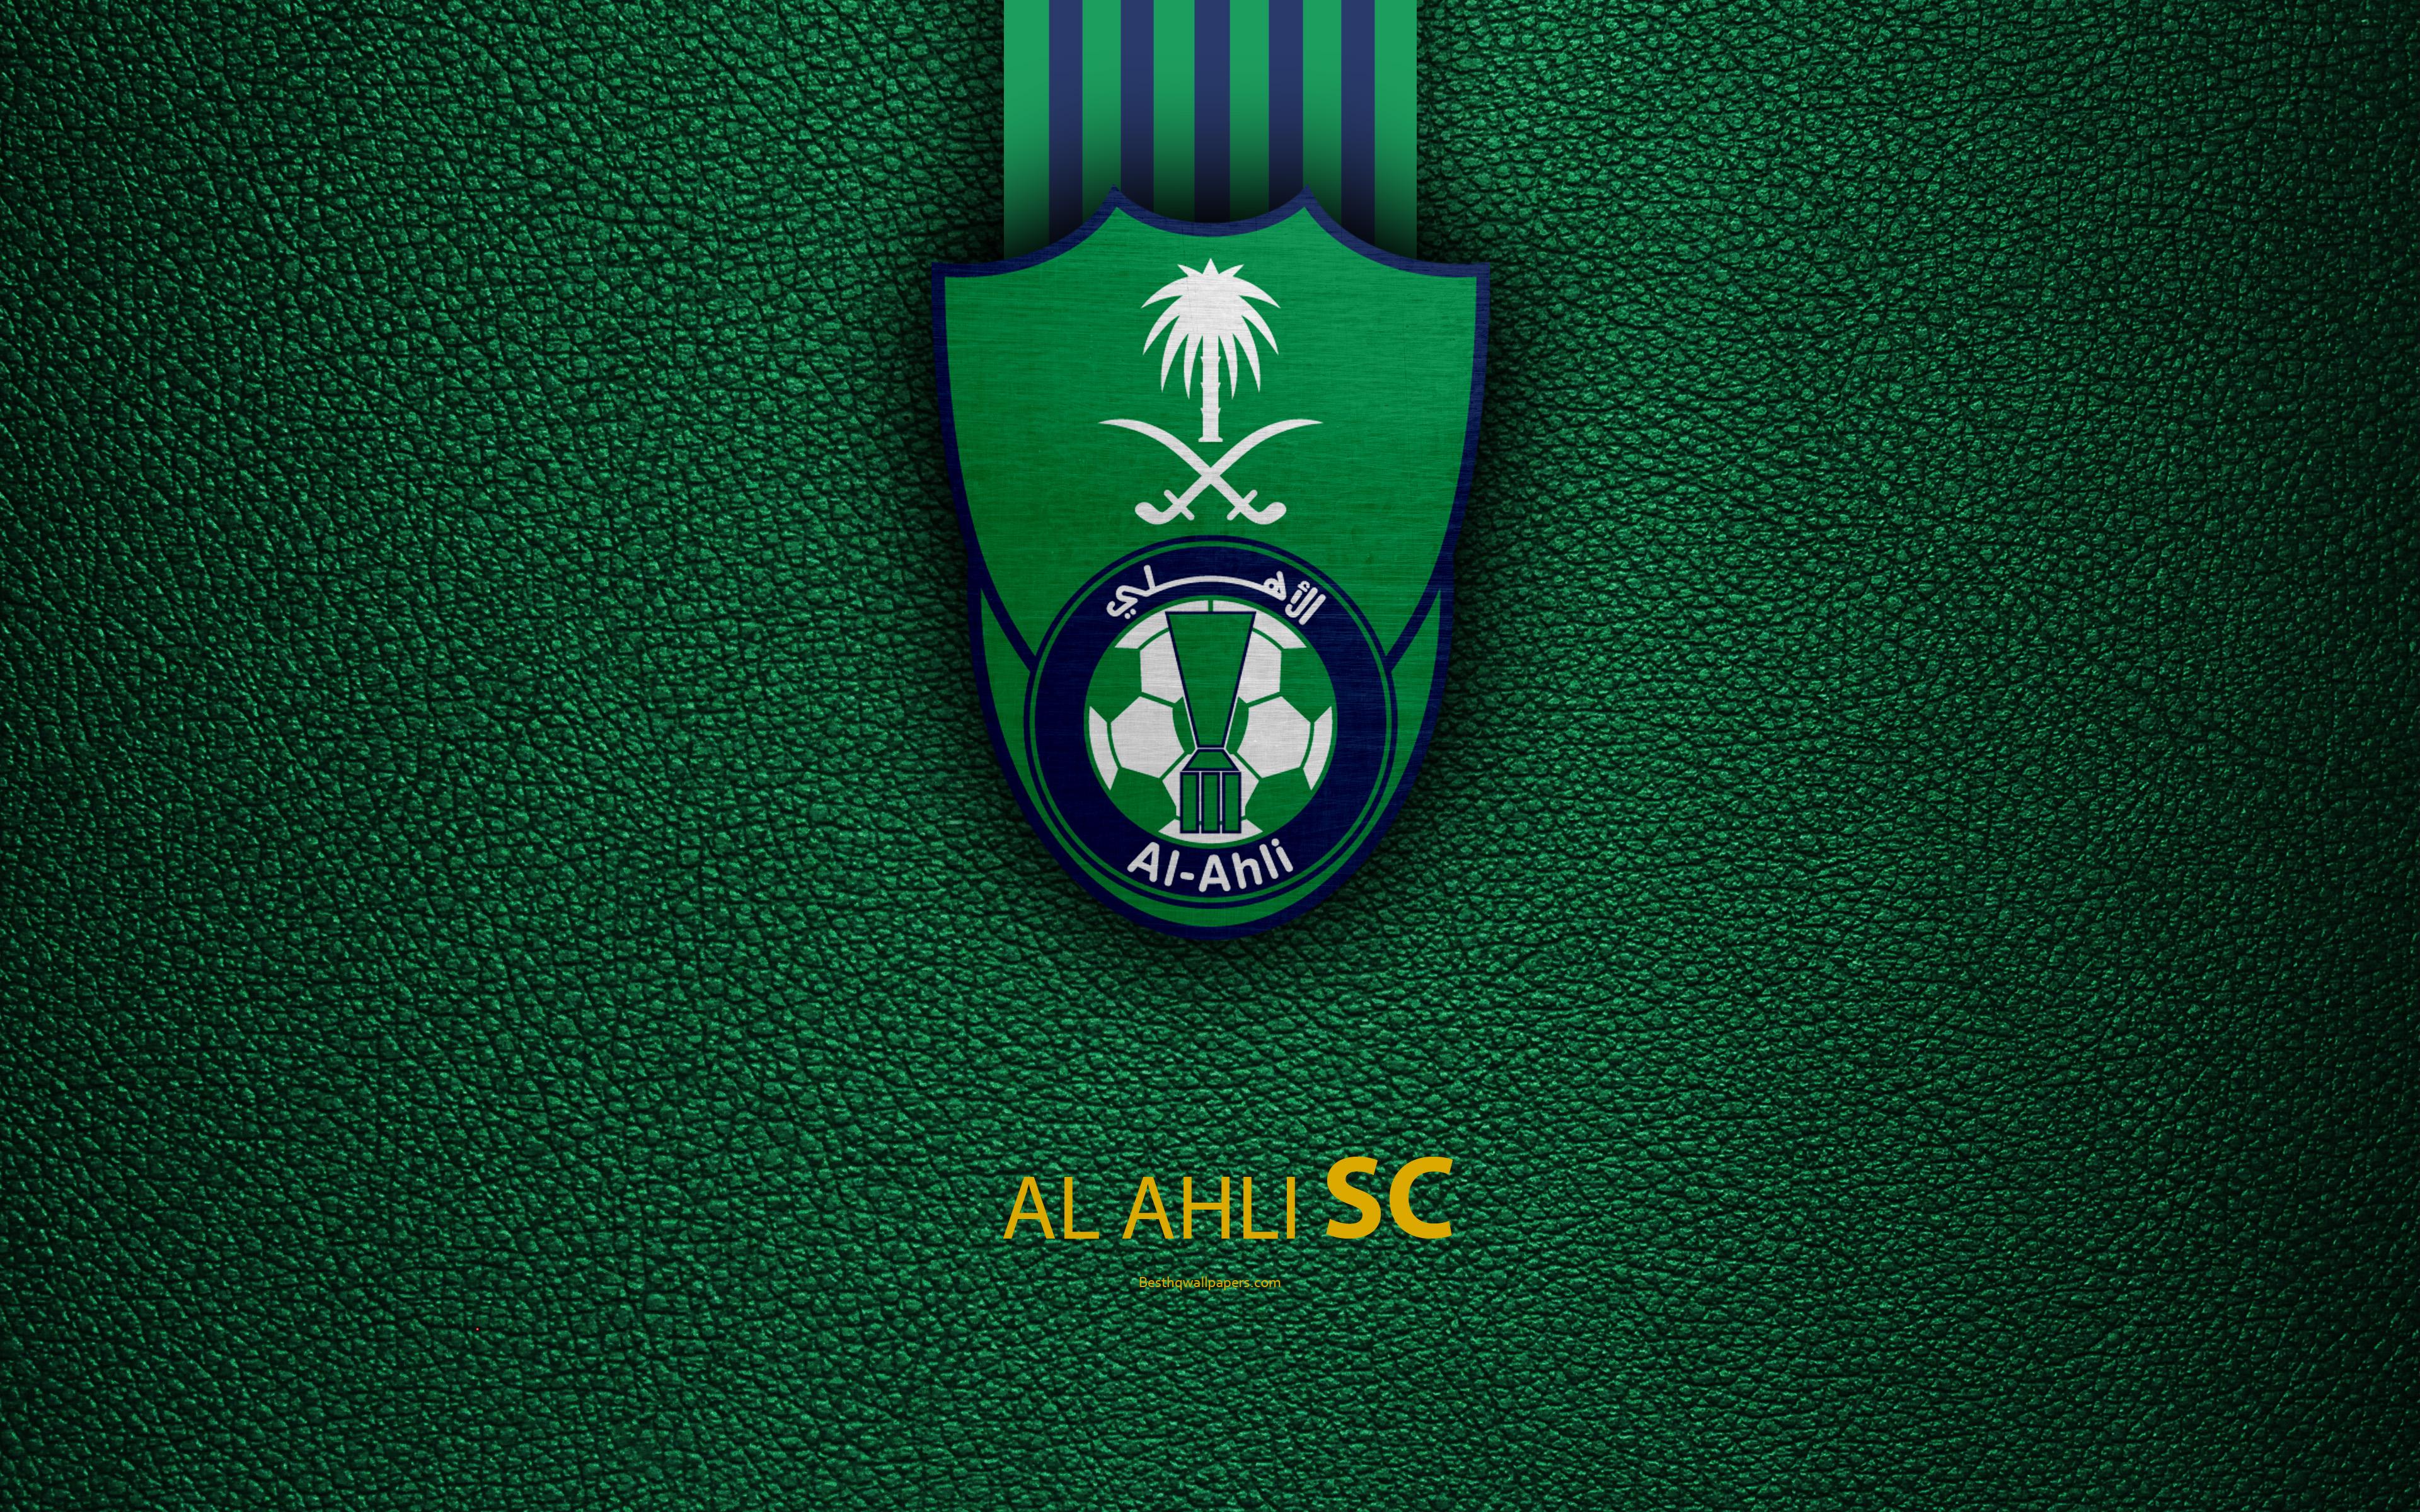 Al Ahli Saudi Football Club - Management And Leadership